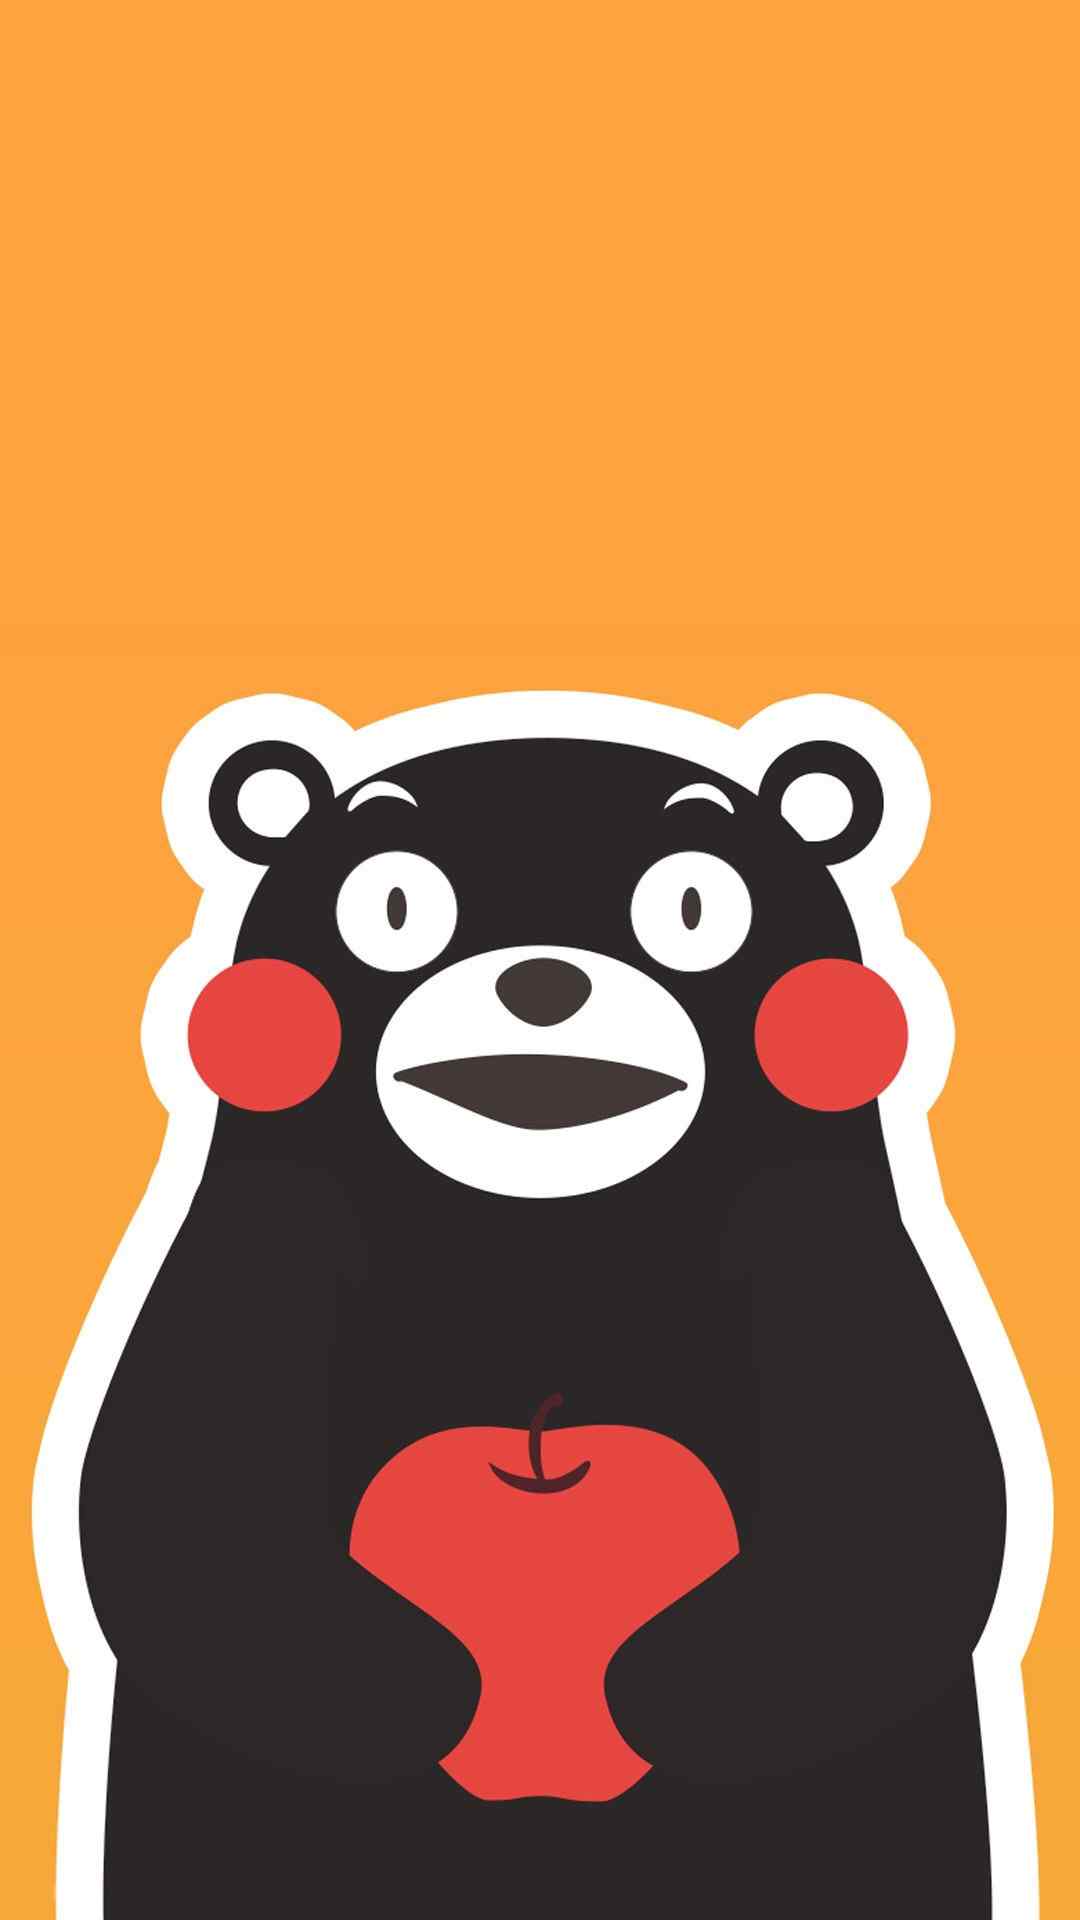 萌萌哒熊本熊抱苹果图片手机壁纸